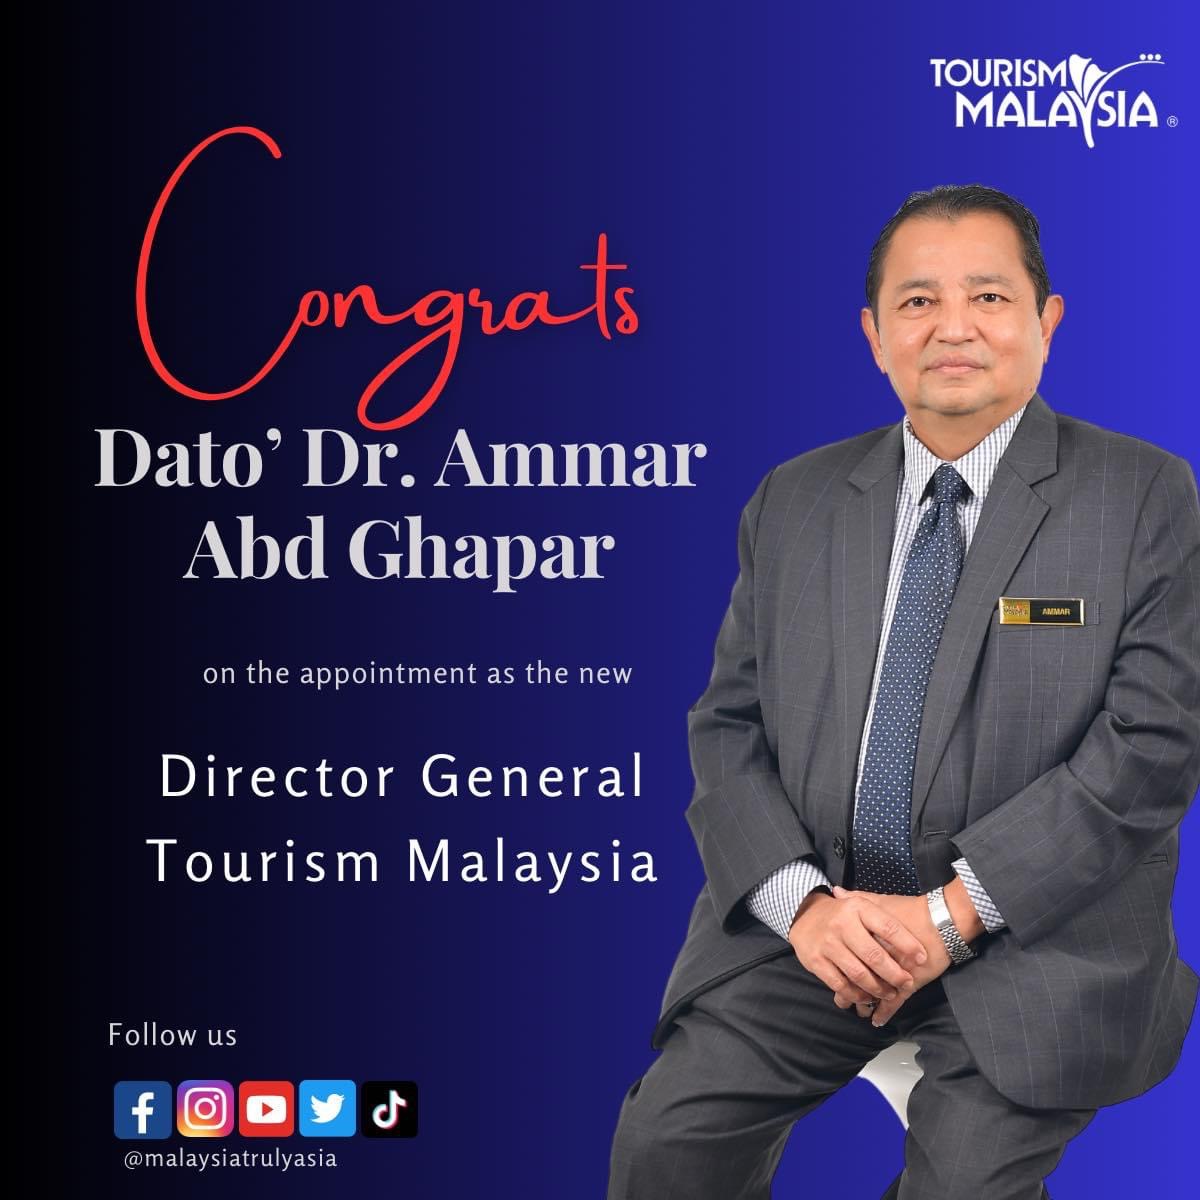 pengarah tourism malaysia johor